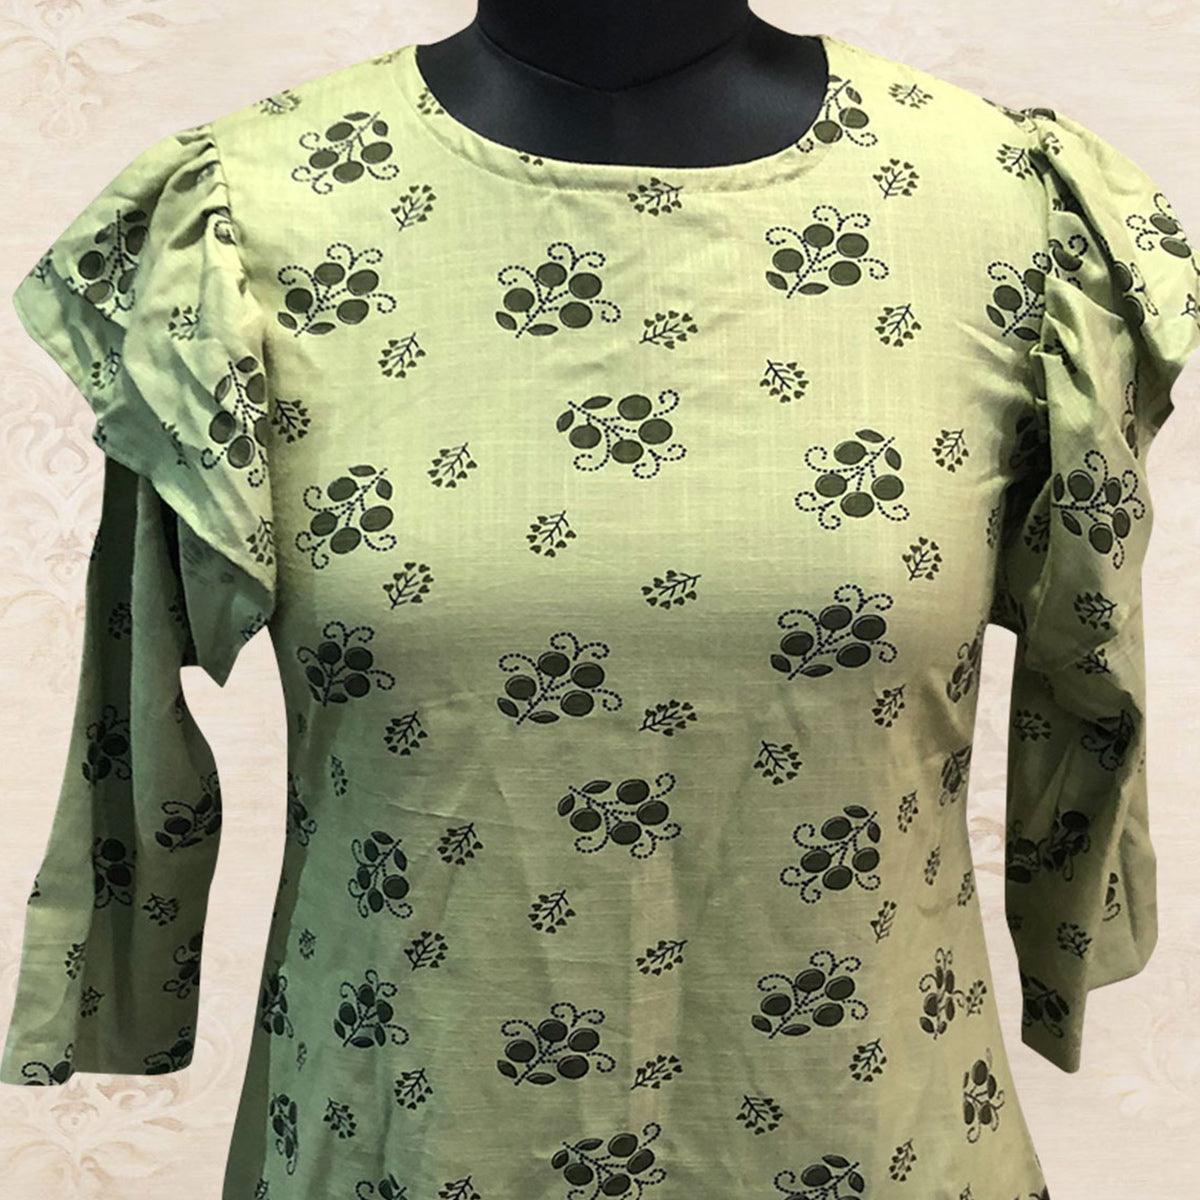 Delightful Green Colored Casual Printed Cotton Top - Peachmode